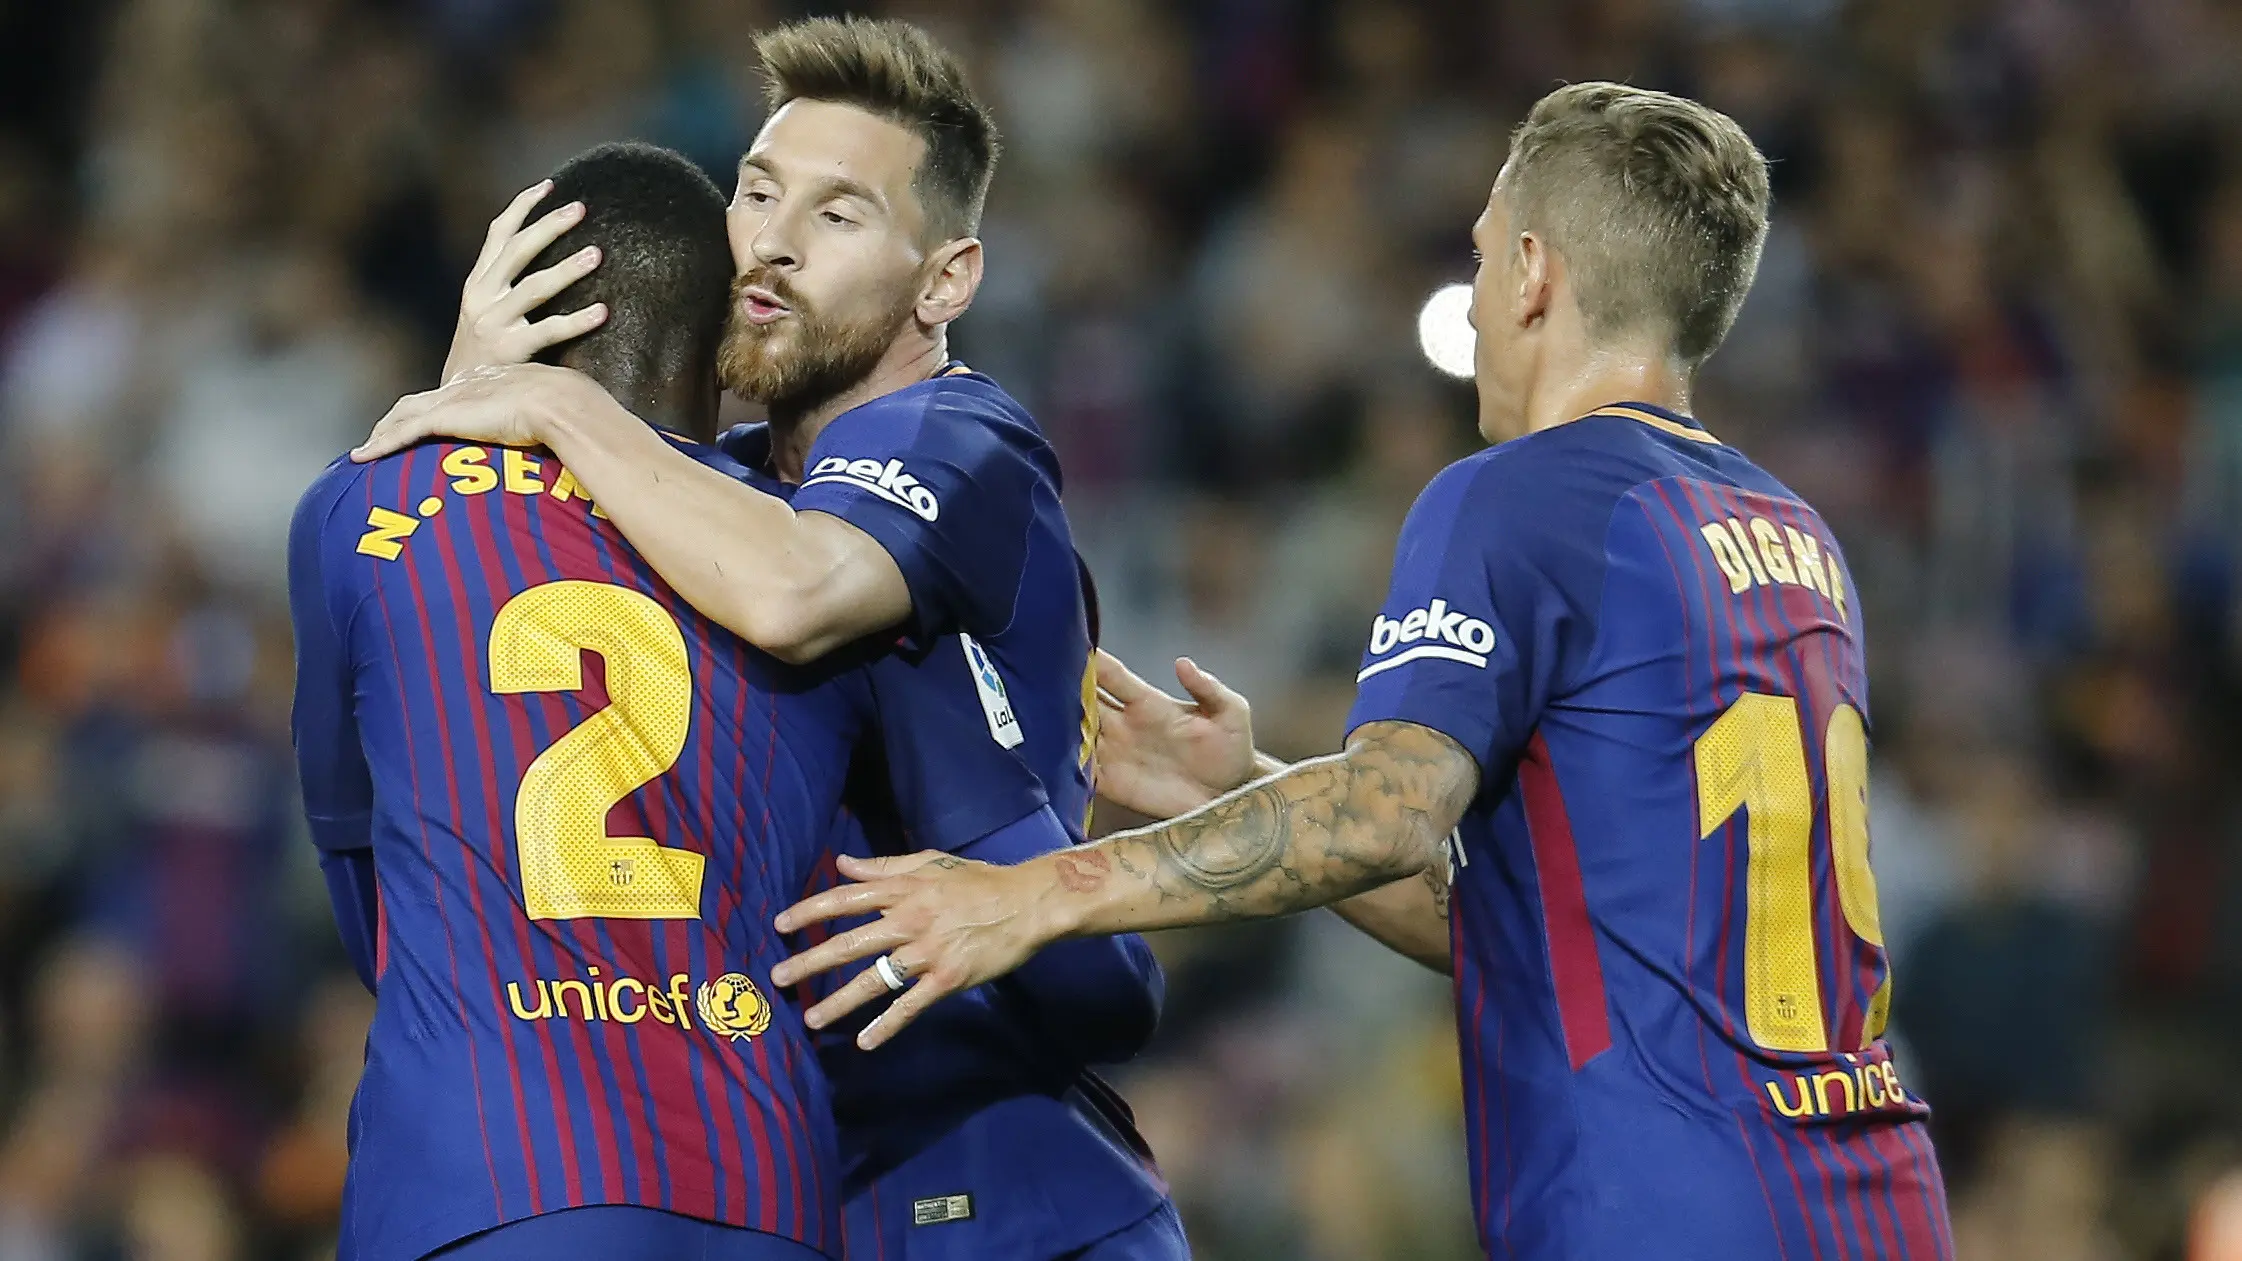 Pemain Barcelona, Lionel Messi (tengah) melakukan selebrasi bersama rekan-rekannya saat melawan Eibar pada lanjutan La Liga Spanyol di Camp Nou stadium, Barcelona (19/9/2017). (AFP/Pau Barrena)